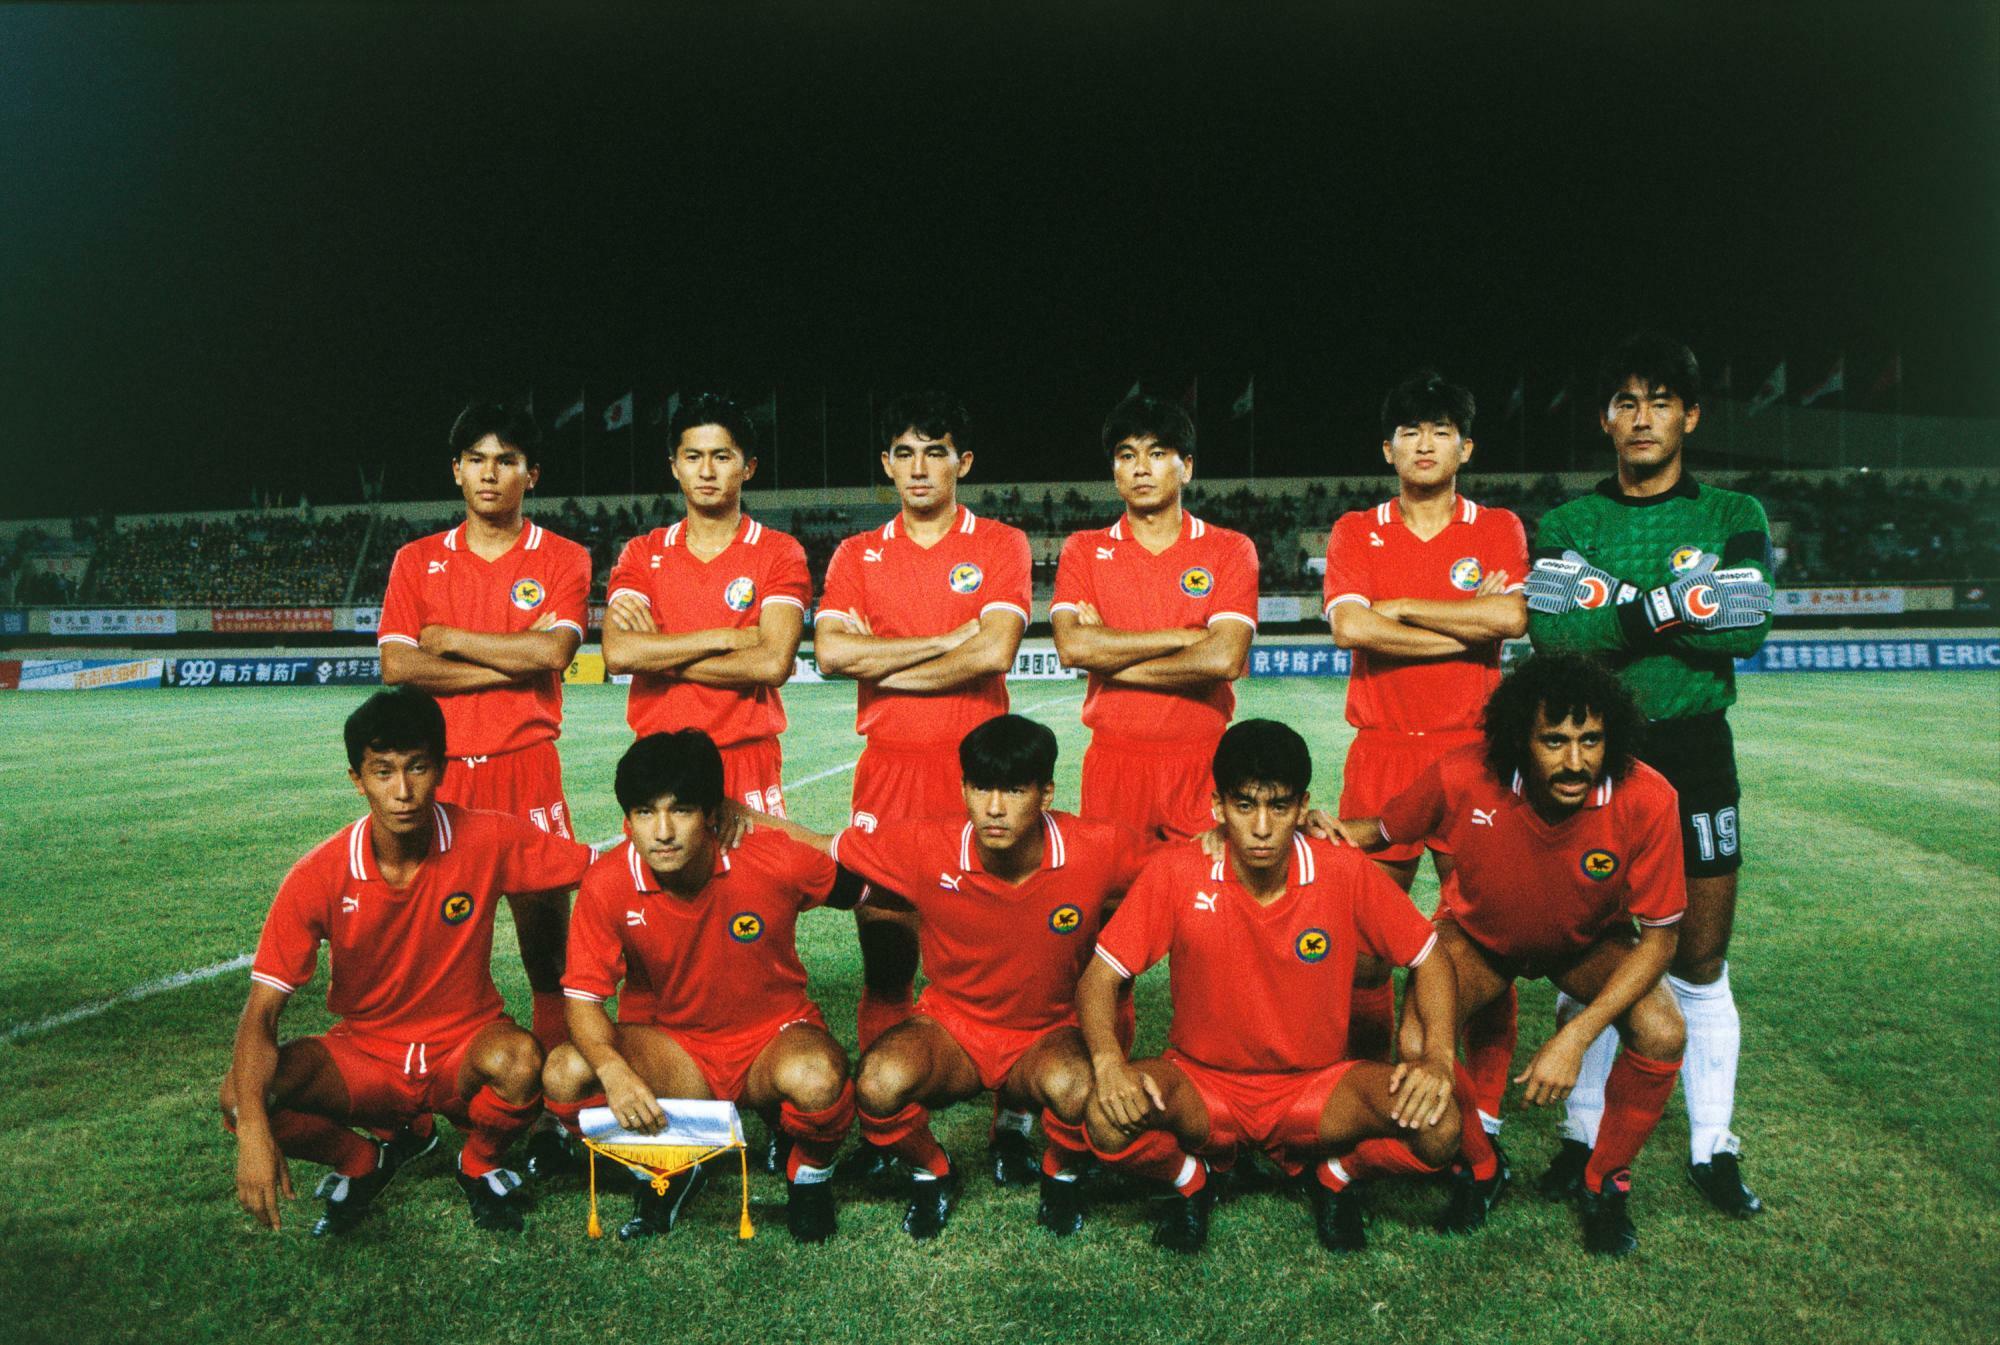 1990年アジア大会、サウジアラビア戦の日本代表、長谷川健太、堀池巧、武田修宏と3名の清水東OBがスタメンに名を連ねた